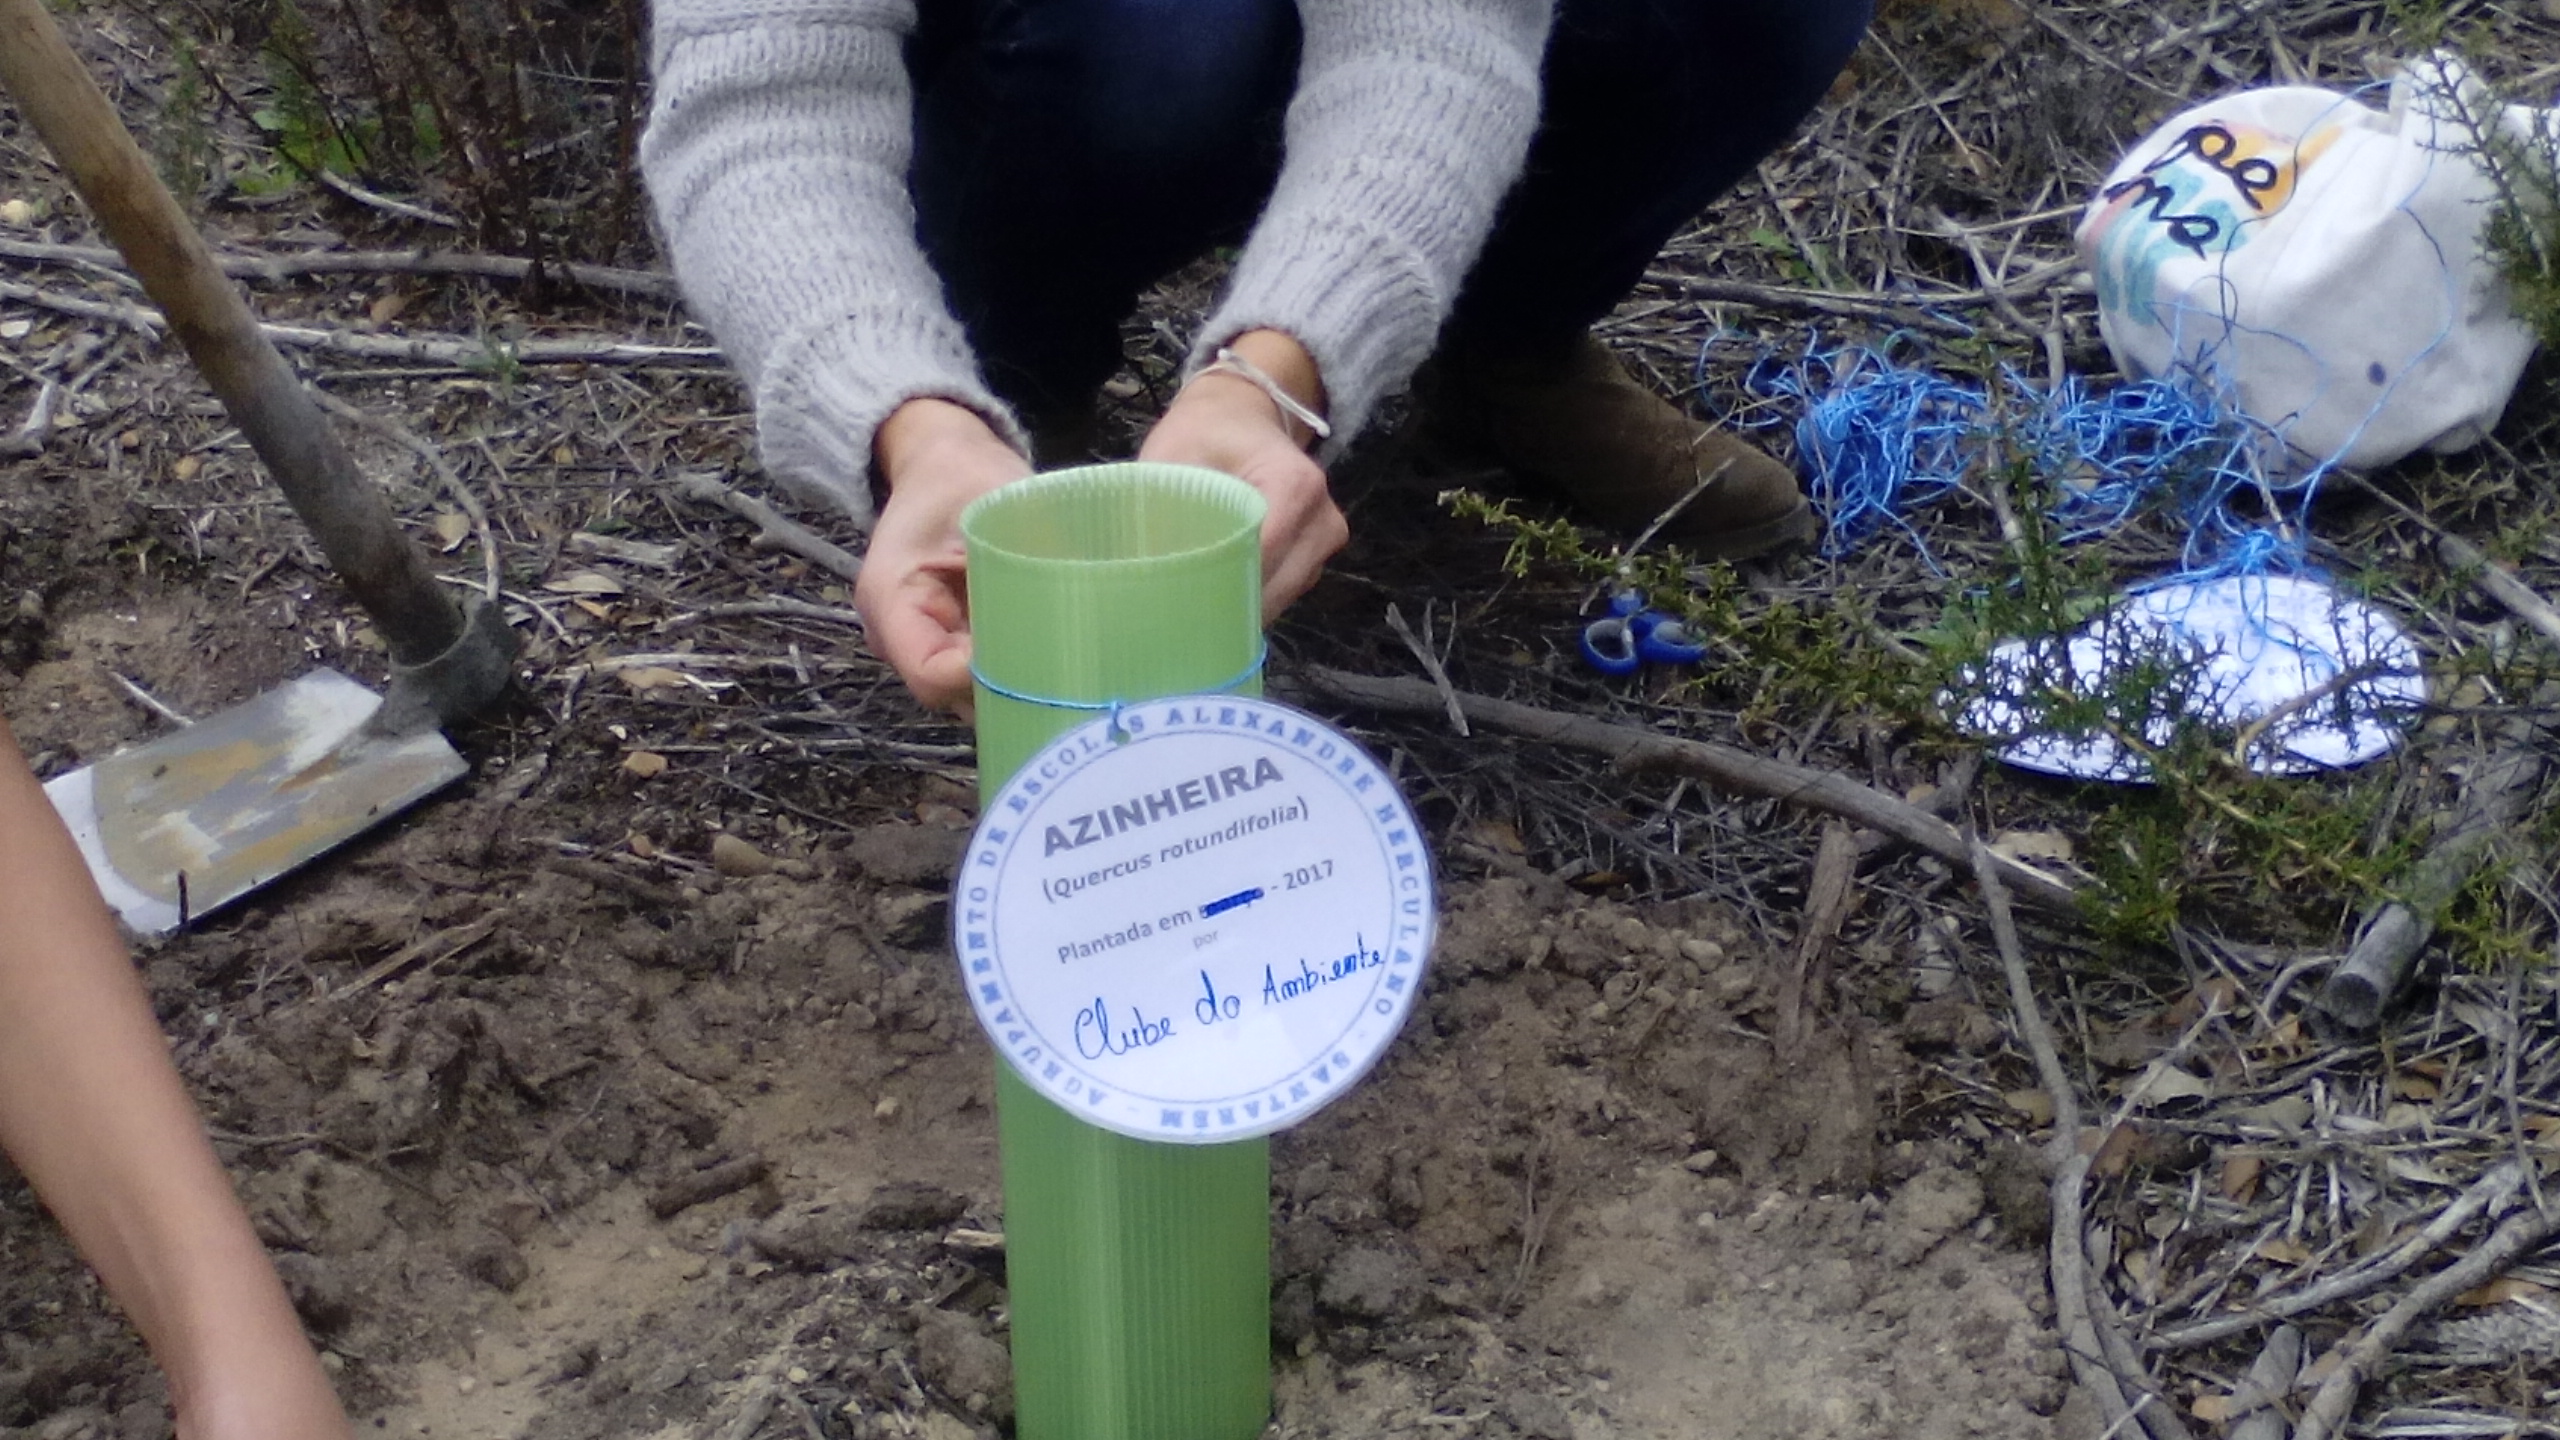 Plantação de oliveiras. Os alunos do Clube do Ambiente/Brigada Verde, plantaram no mês de abril oliveiras no espaço escolar.